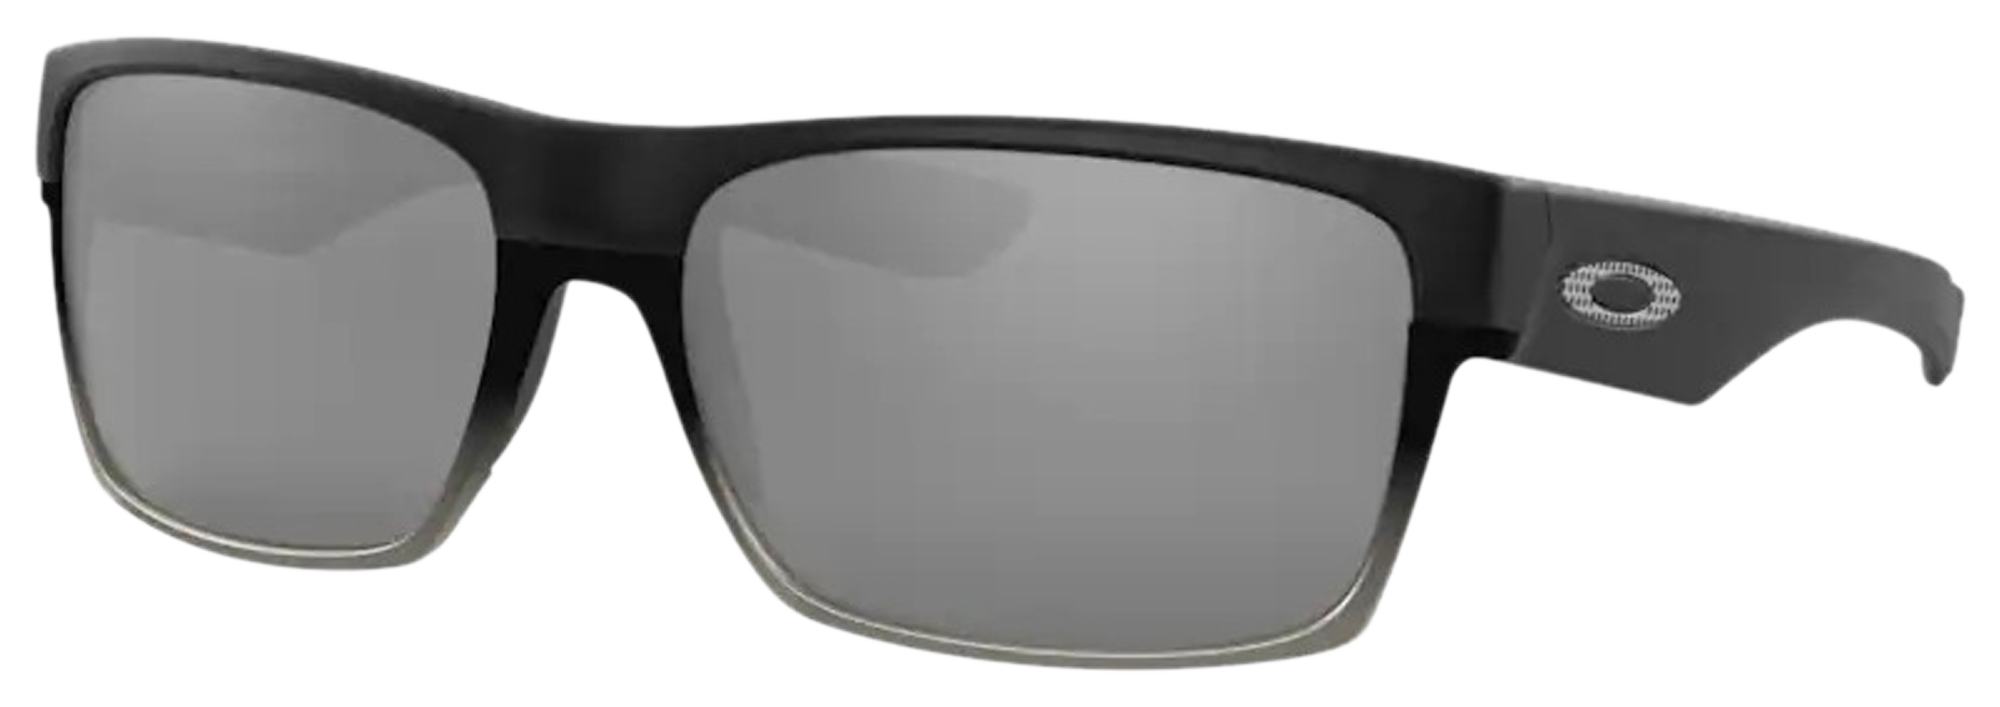 Oakley Twoface Sunglasses - Men's